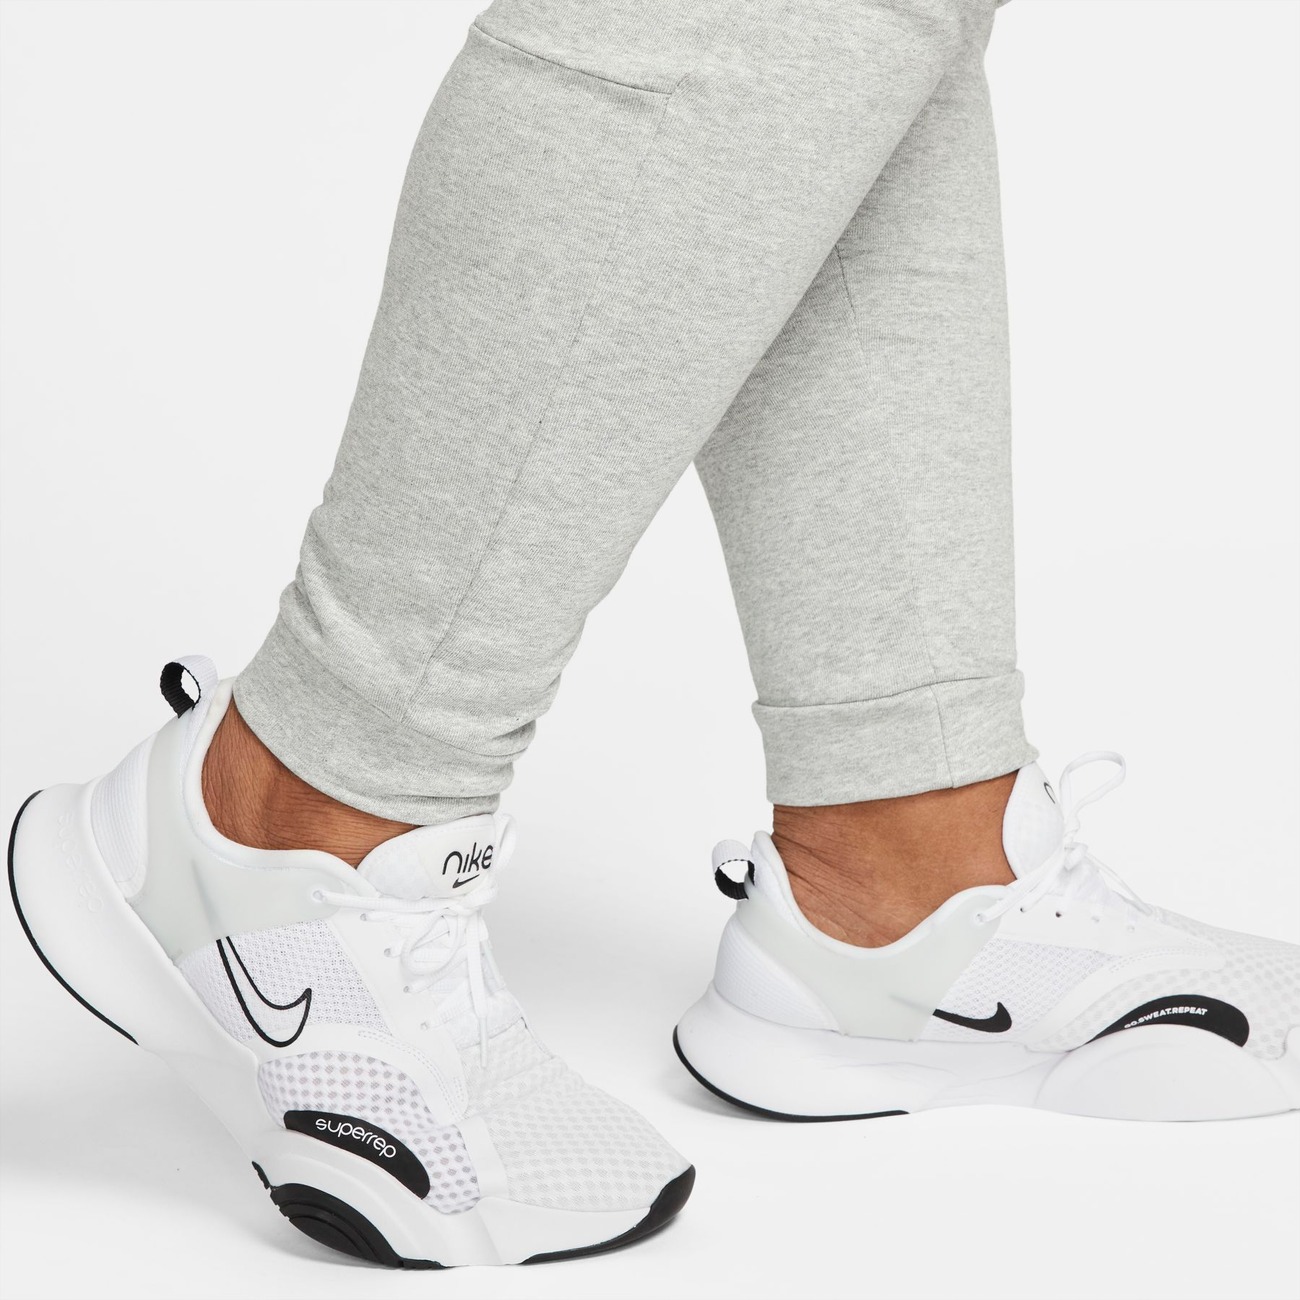 Calça Nike Dri-FIT Masculina - Foto 3